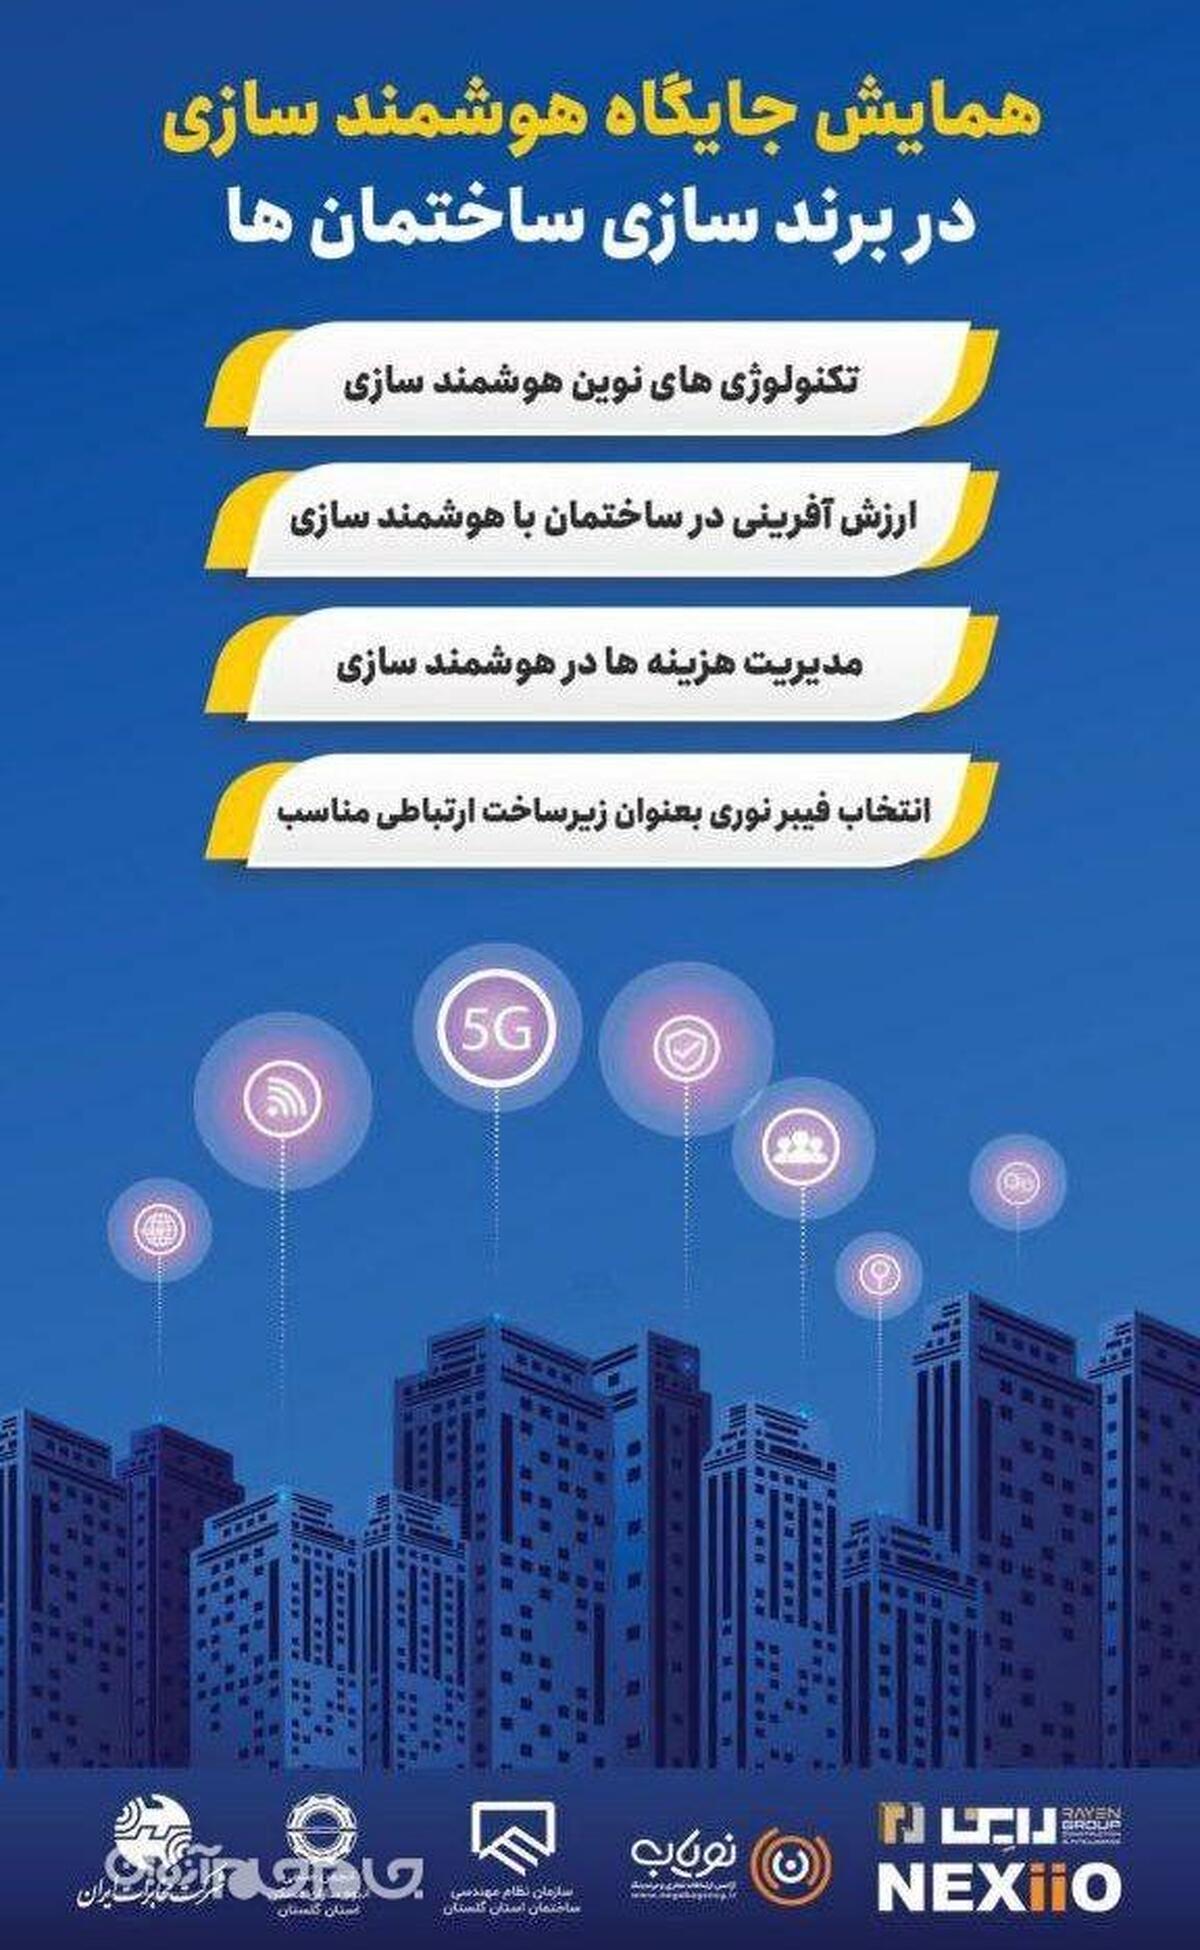 همایش جایگاه هوشمند سازی در برند سازی ساختمان ها با مشارکت مخابرات منطقه گلستان برگزار می شود . 